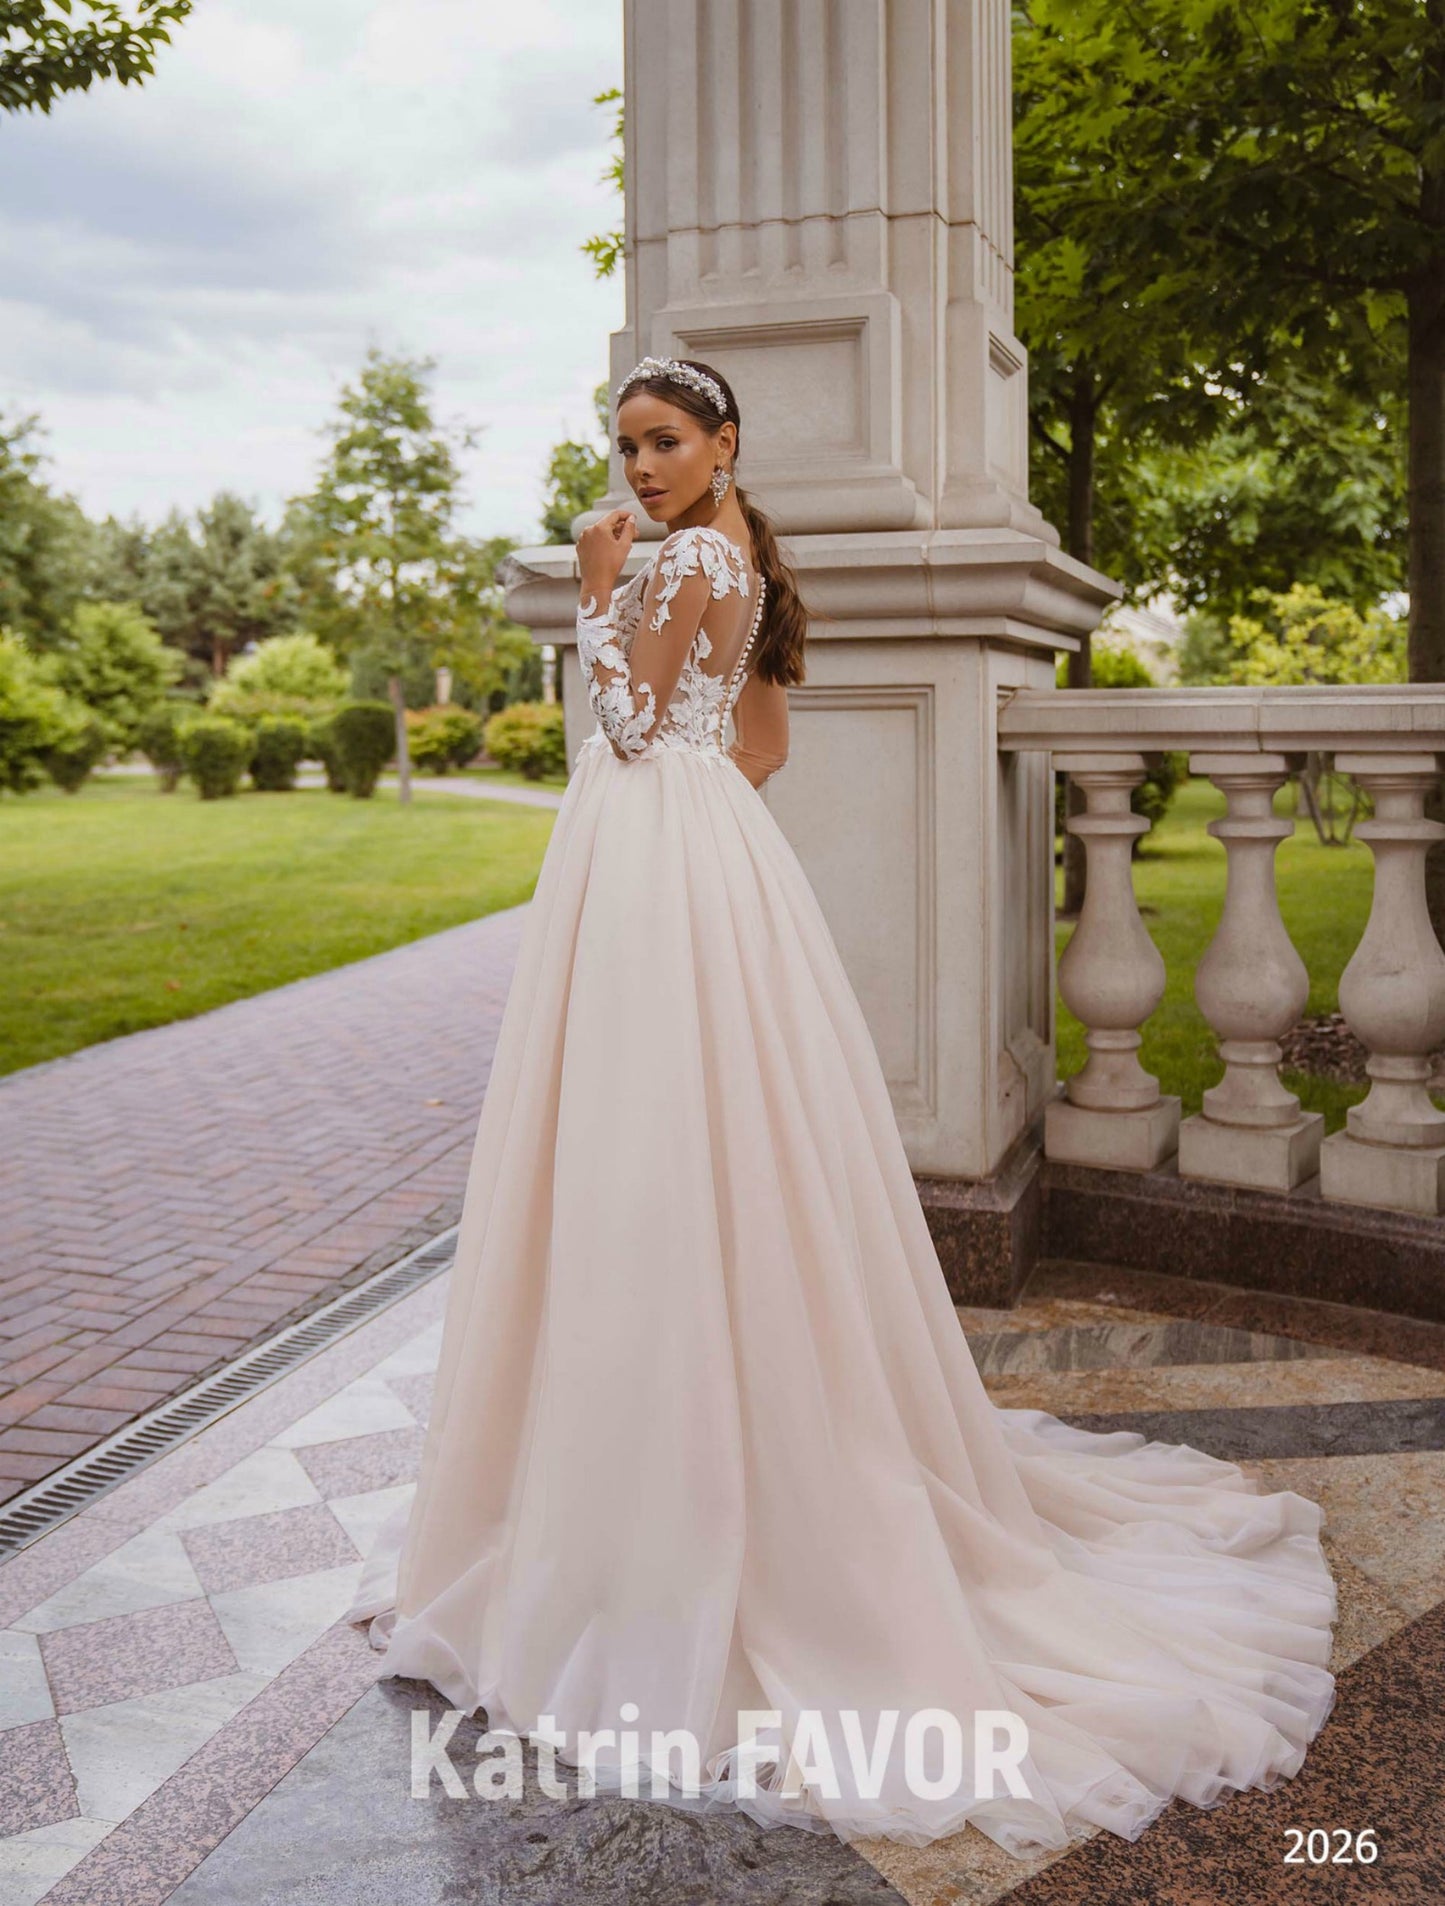 KatrinFAVORboutique-Embroidered sheer long sleeve wedding dress